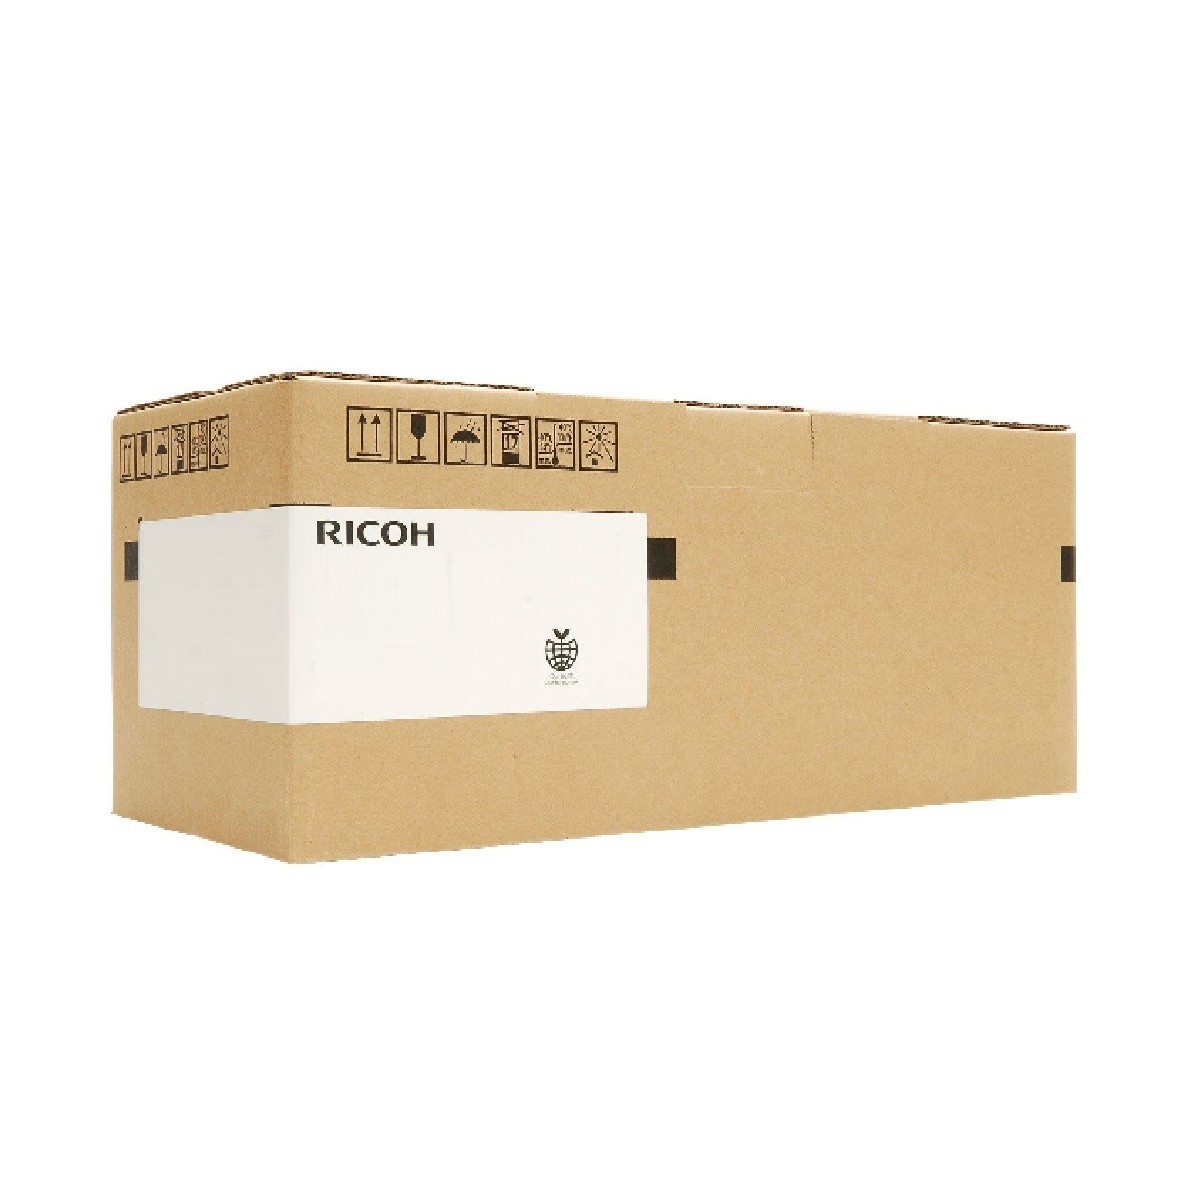 Ricoh D081K200 - Maintenance kit - 200000 pages - Ricoh - Aficio MP C6501SP Aficio MP C7501SP imagio MP C6001 imagio MP C6001SP 